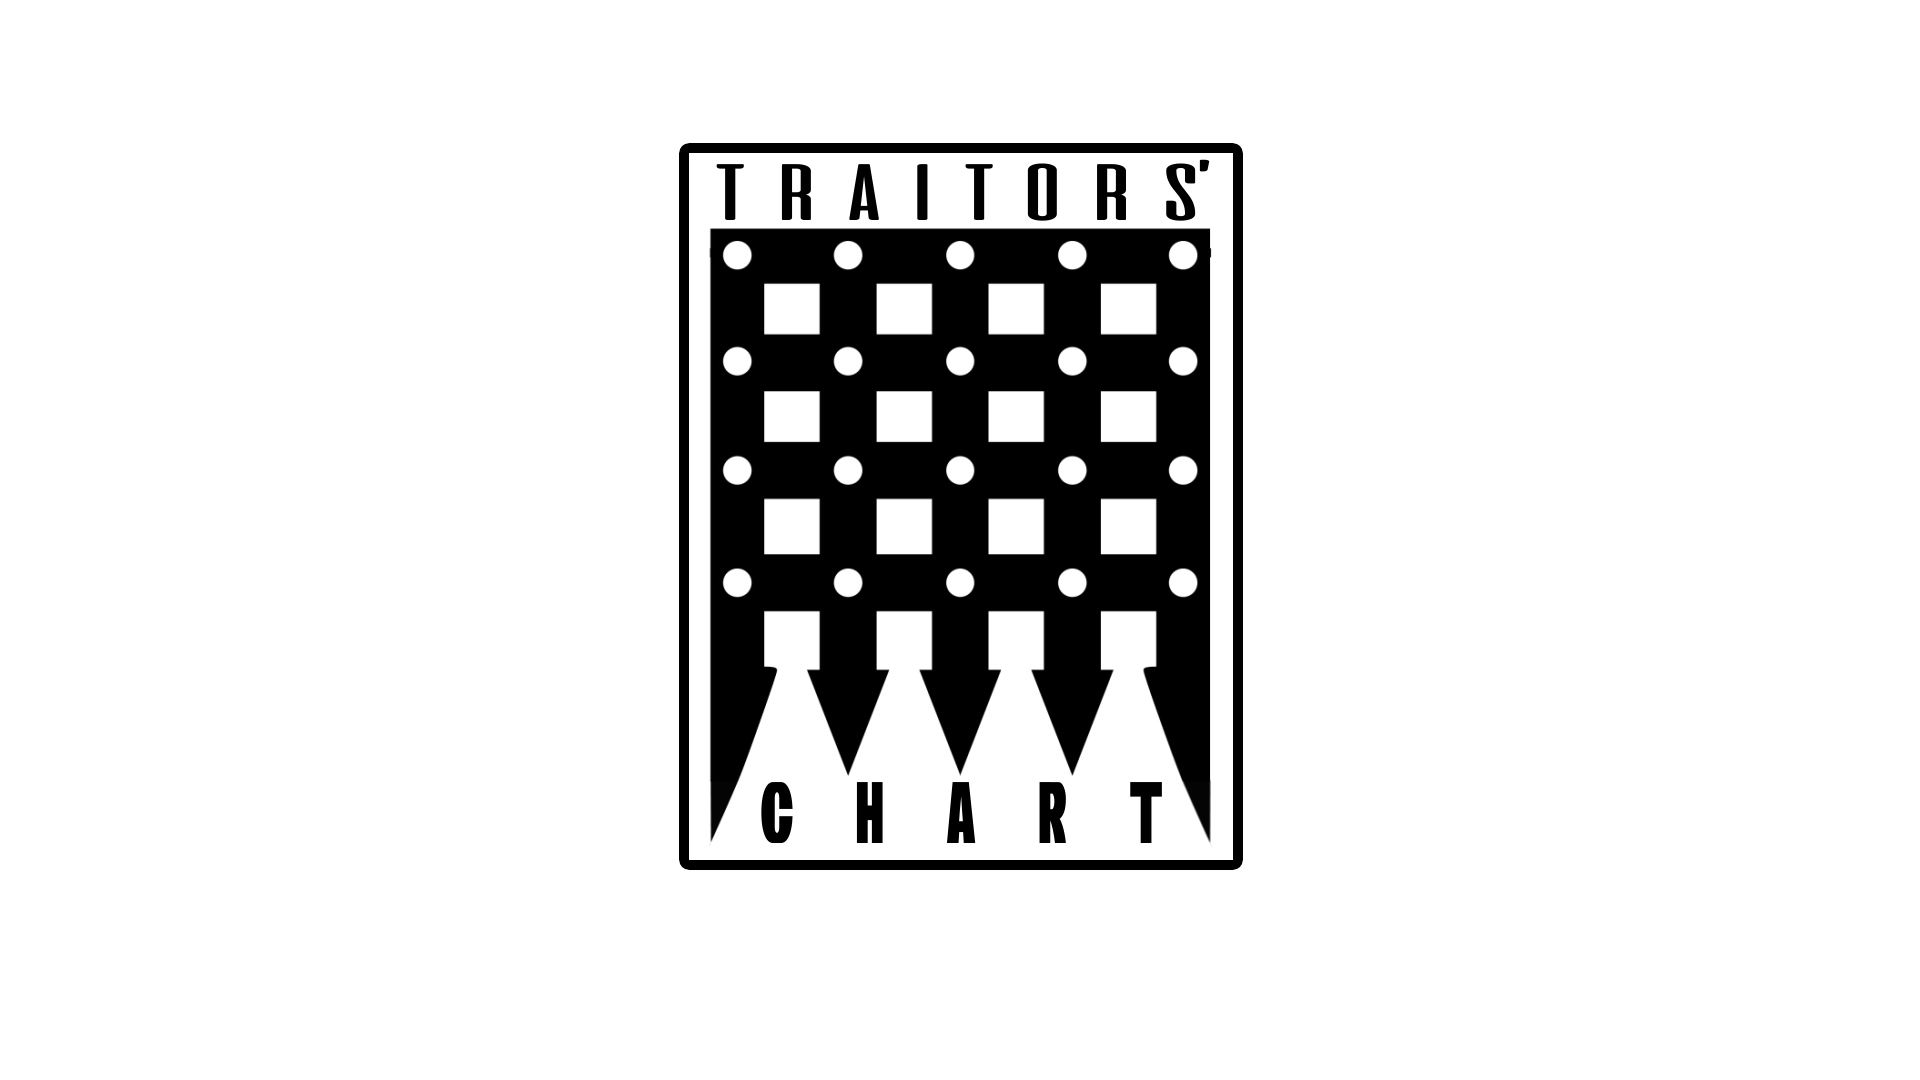 Traitors Chart logo